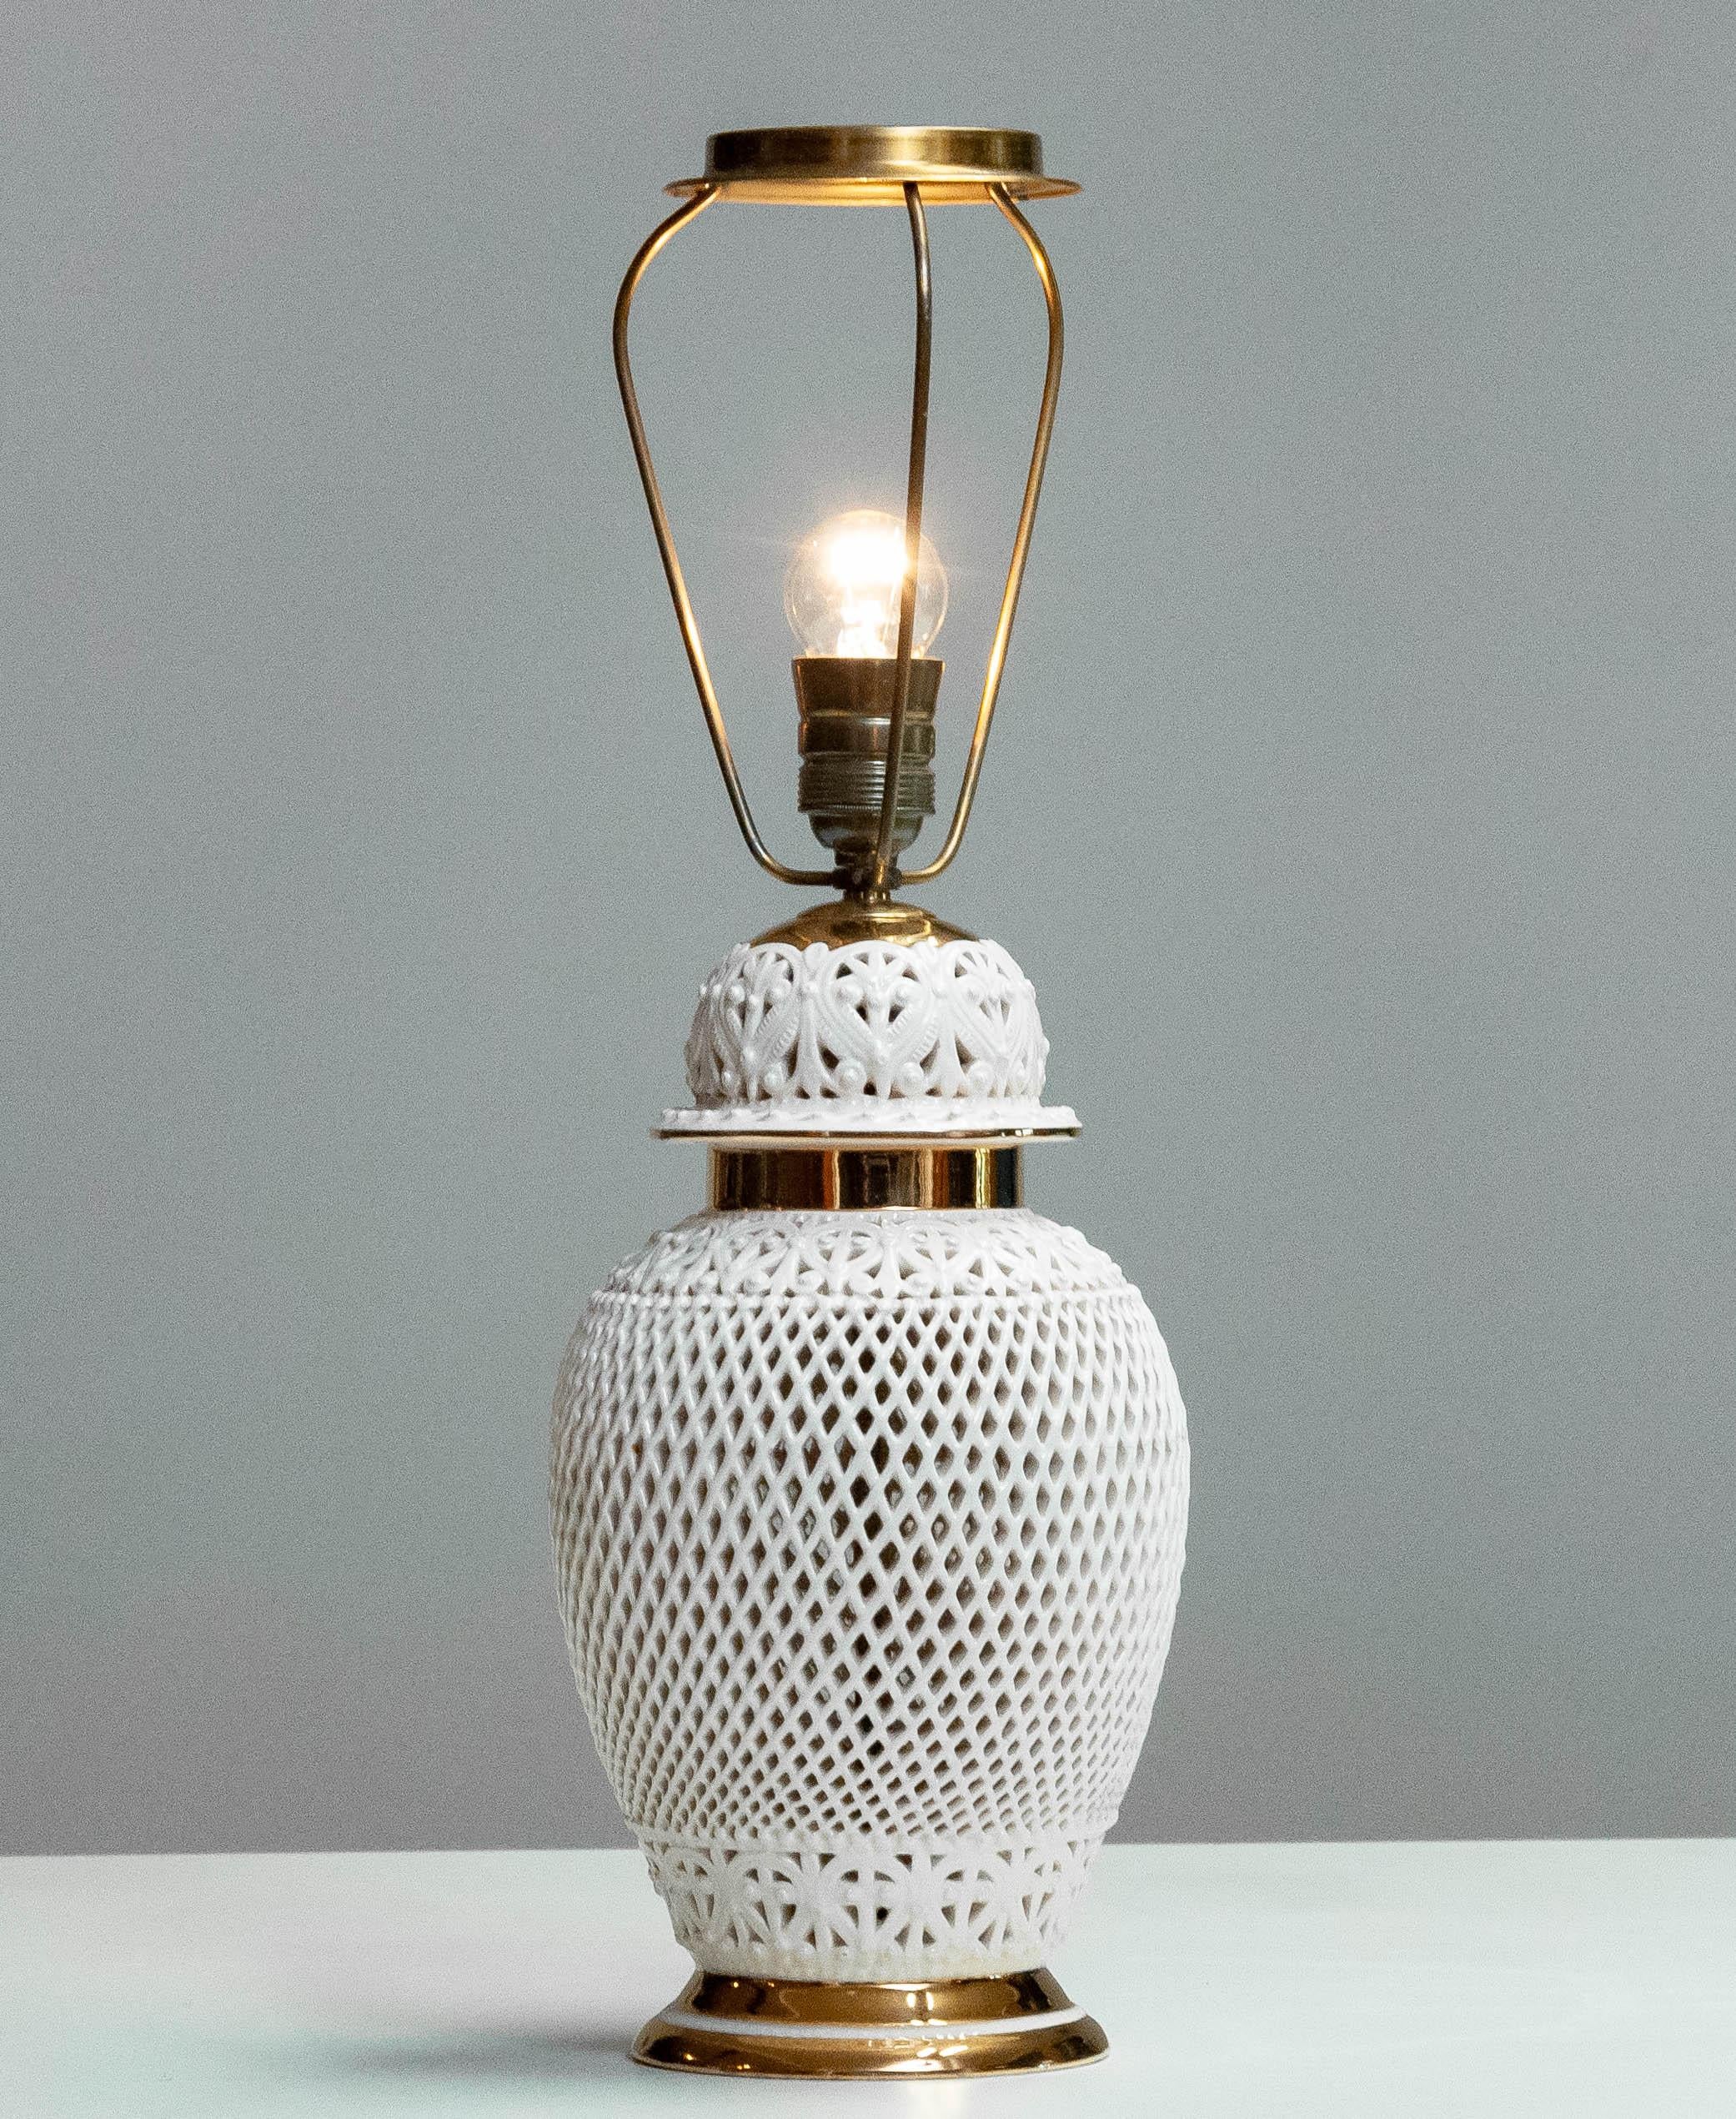 Schöne romantische Tischlampe aus weiß glasierter, perforierter Keramik, hergestellt in Italien in den 1960er Jahren und nummeriert 1304. Diese Tischlampe ist in einem durchweg guten Zustand und technisch 100%.
 

Bitte beachten Sie!
Da die